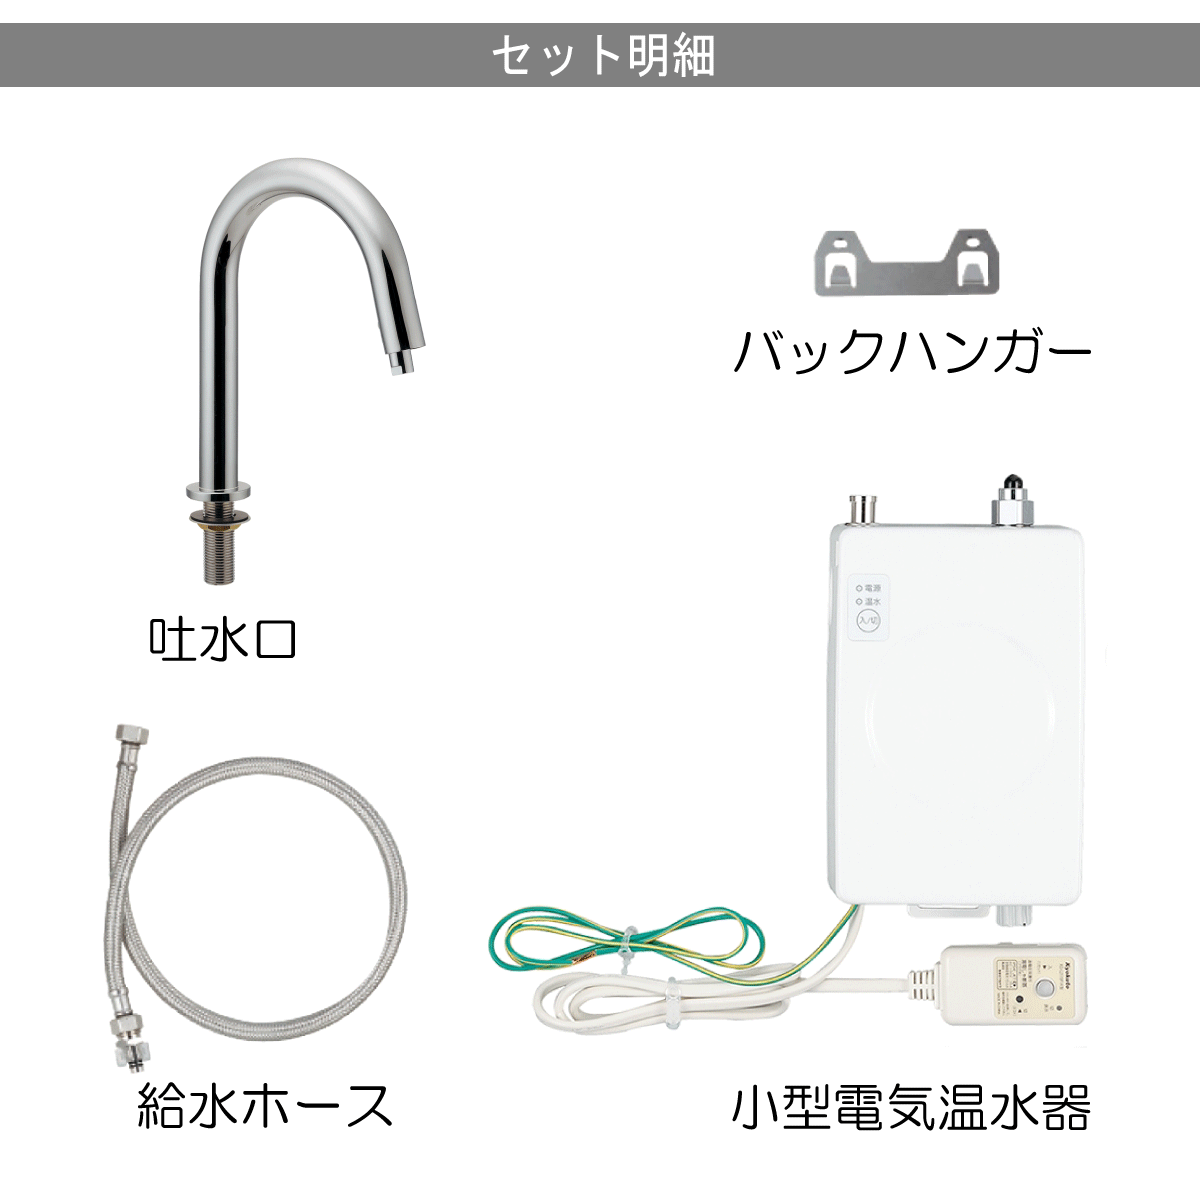 カクダイ カクダイ 小型電気温水器(センサー水栓つき) ▽807-4170 239-001-2 1S